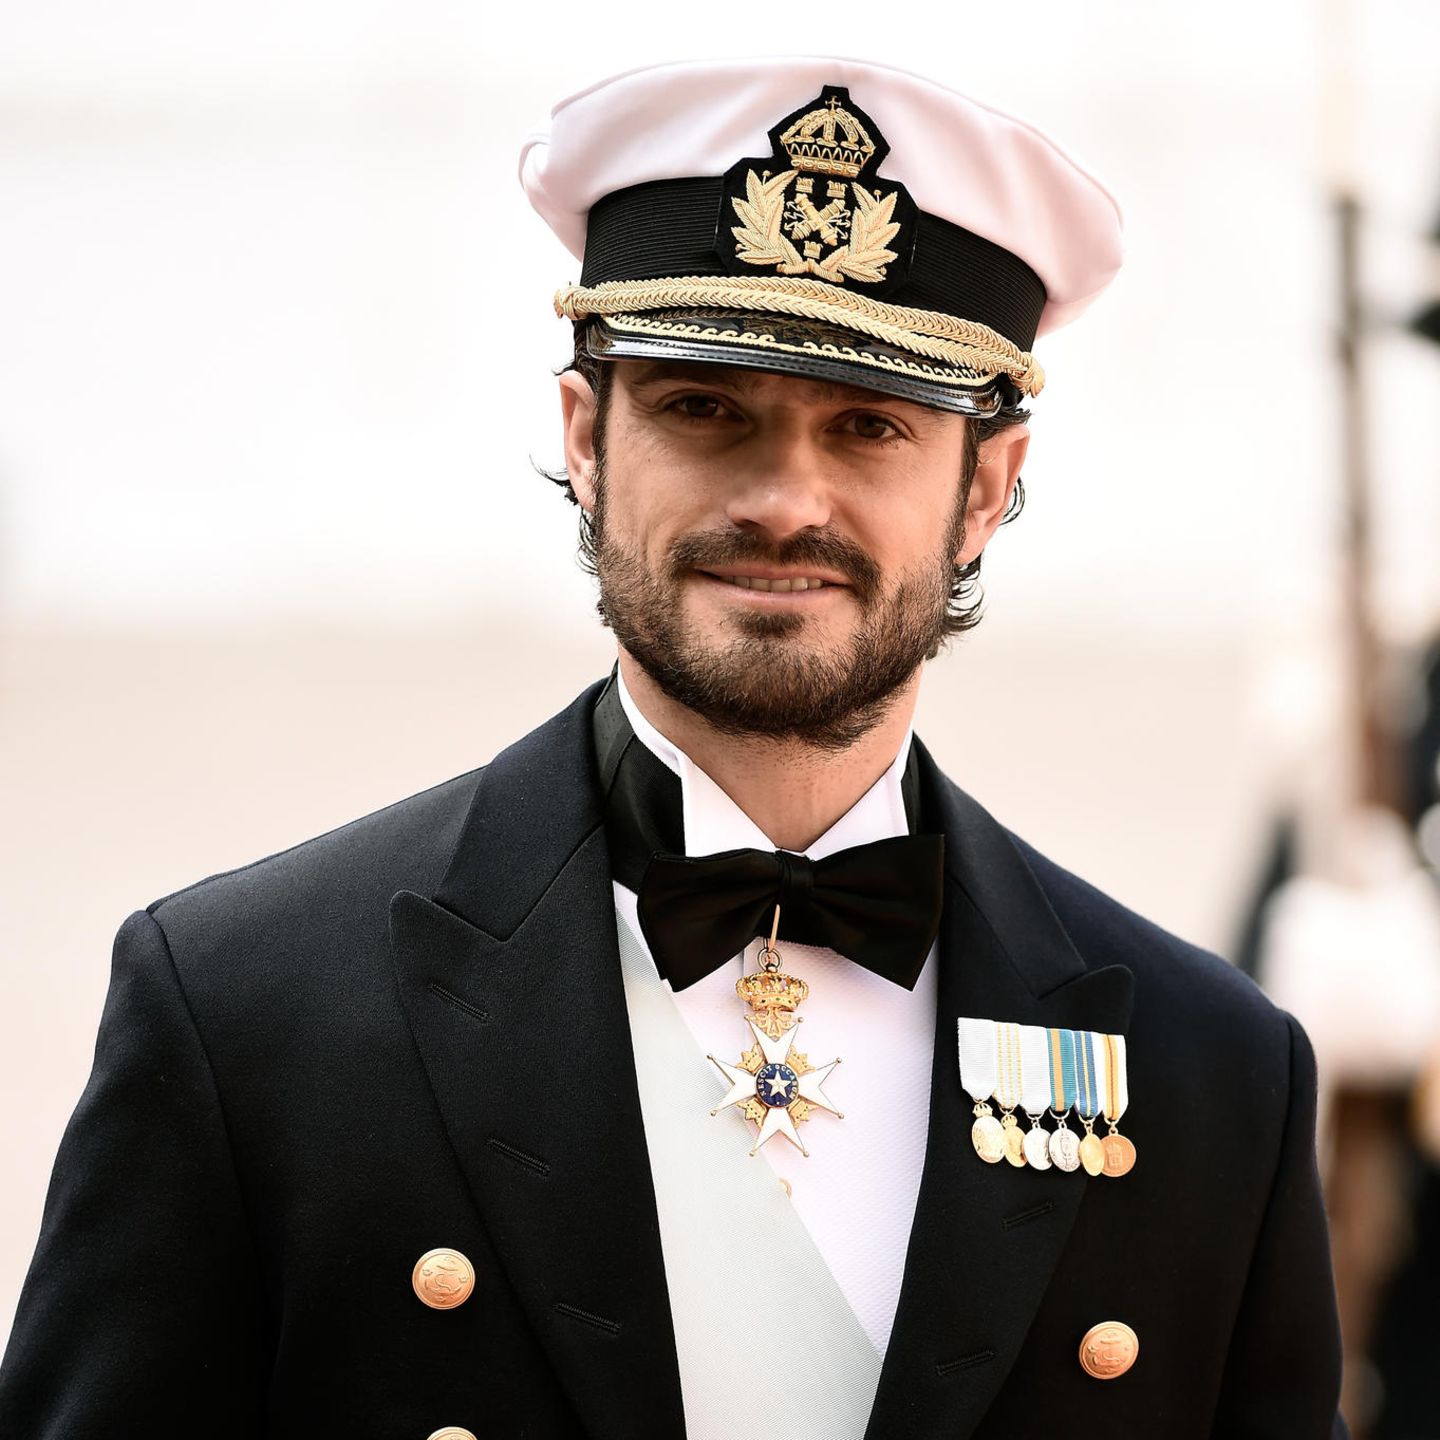 Promis mit und ohne Bart: Prinz Carl Philip von Schweden mit Bart